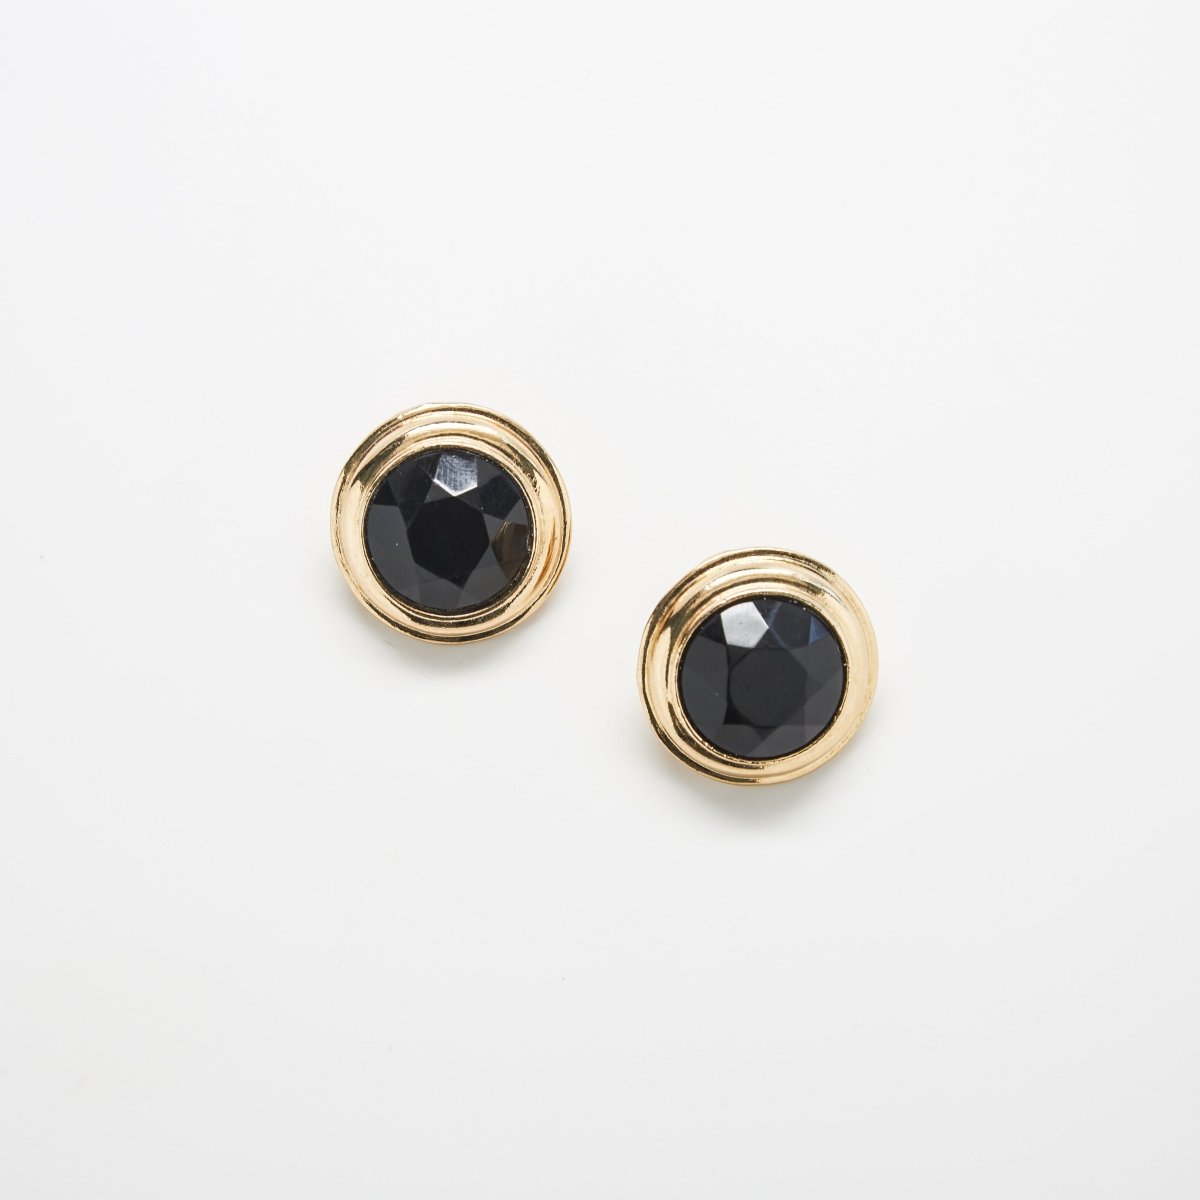 Vintage Black Rhinestone Round Earrings - Admiral Row